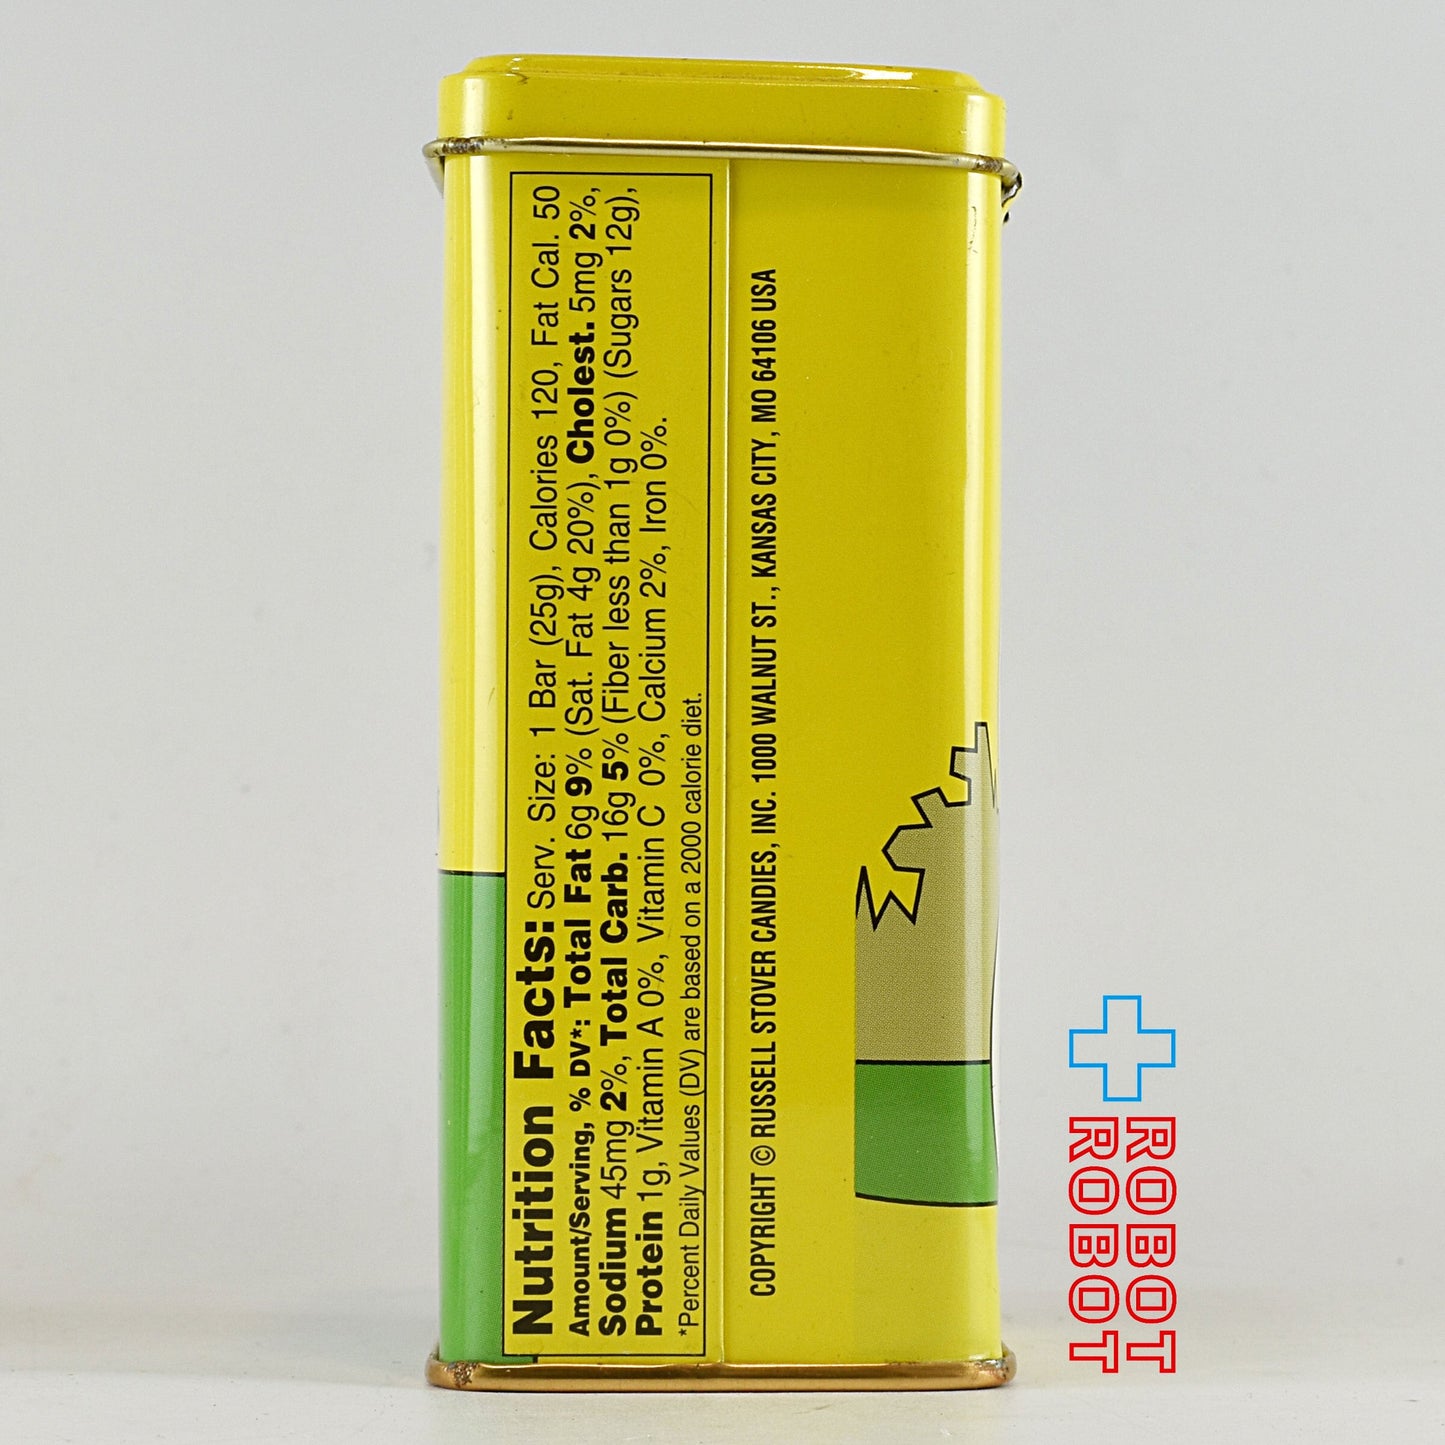 ルーニー・テューンズ タズマニアン・デビル 空き缶 (ラッセルストバー社) 1995